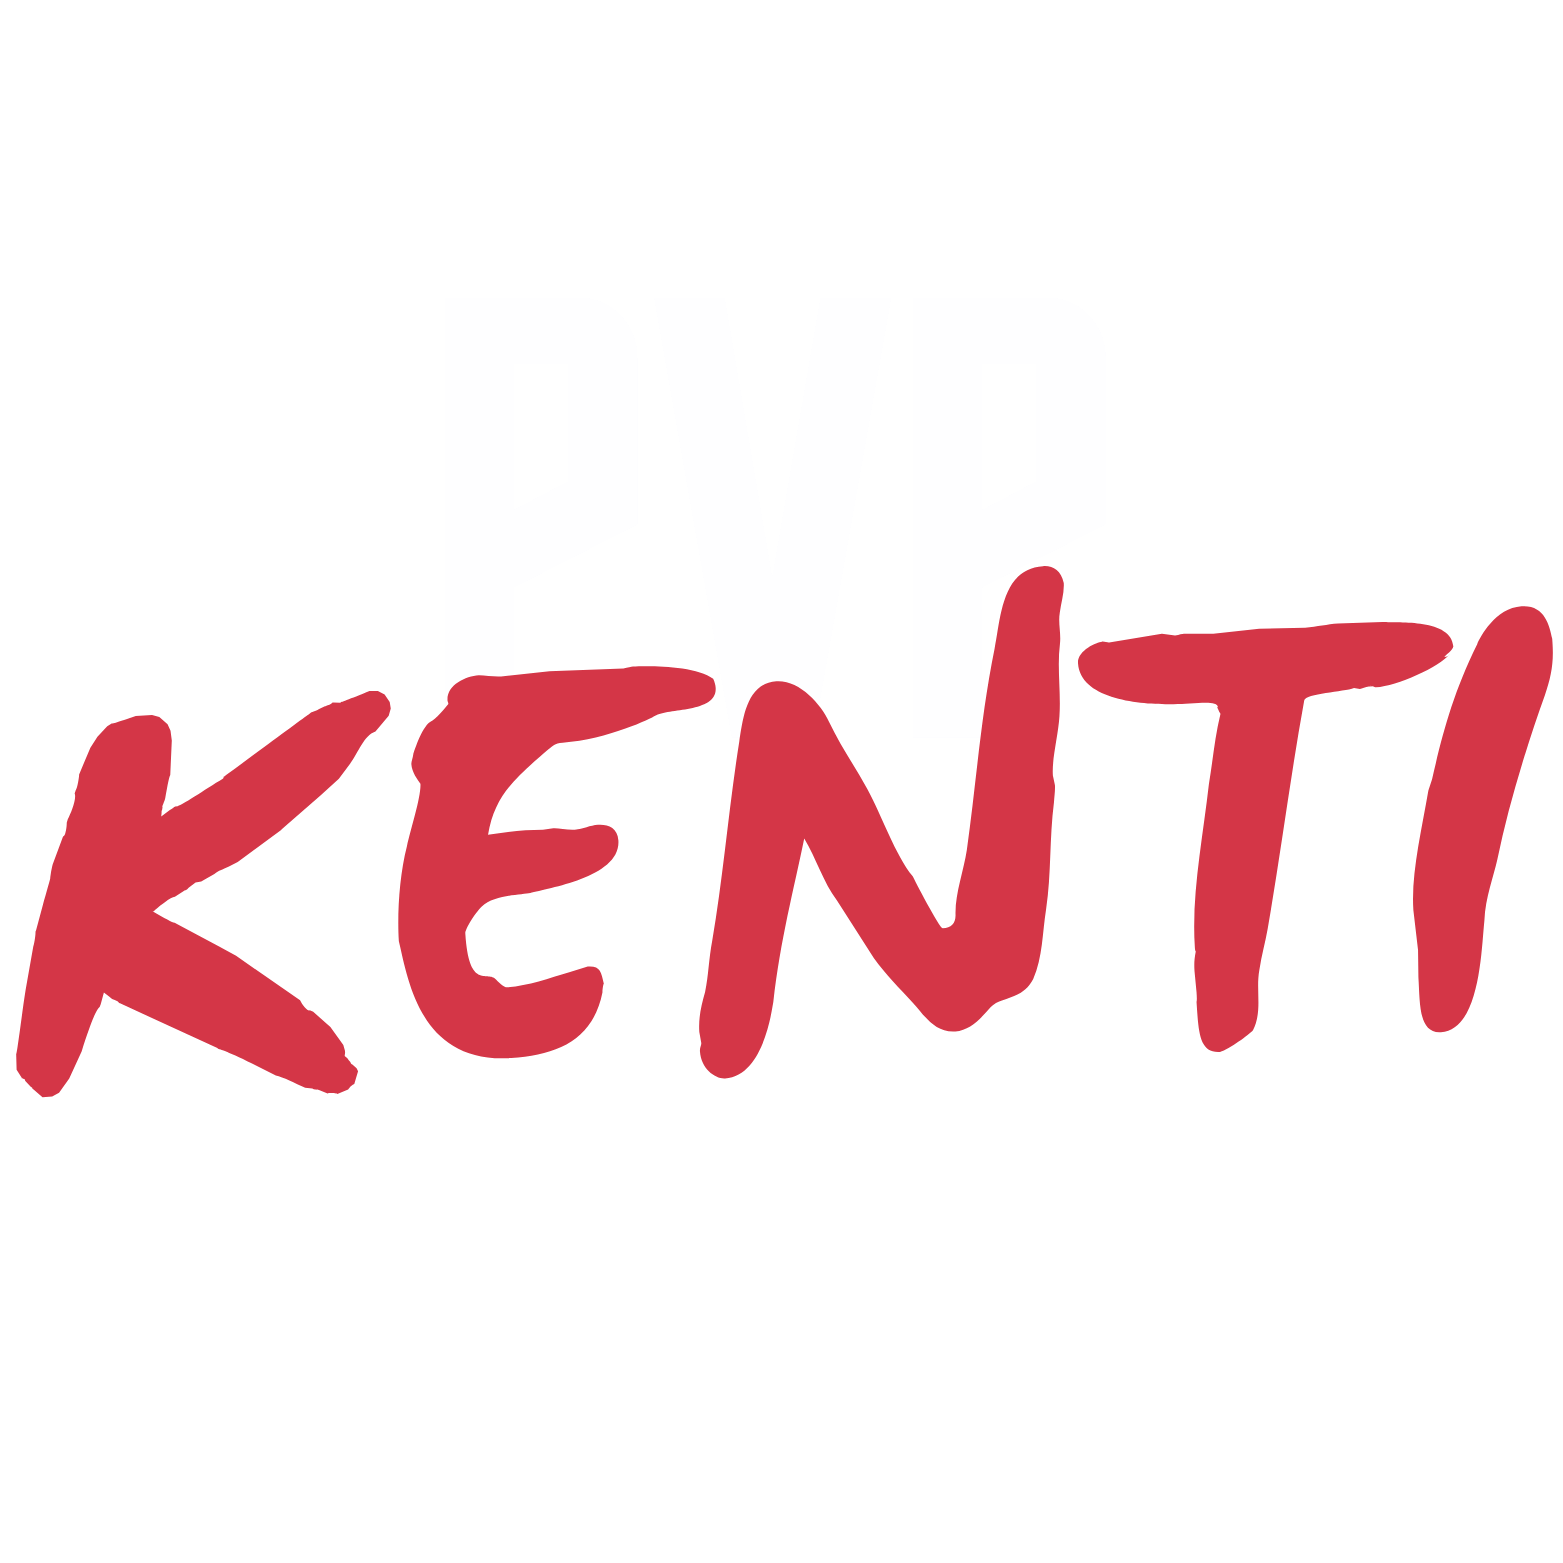 PVPKENTI.NET